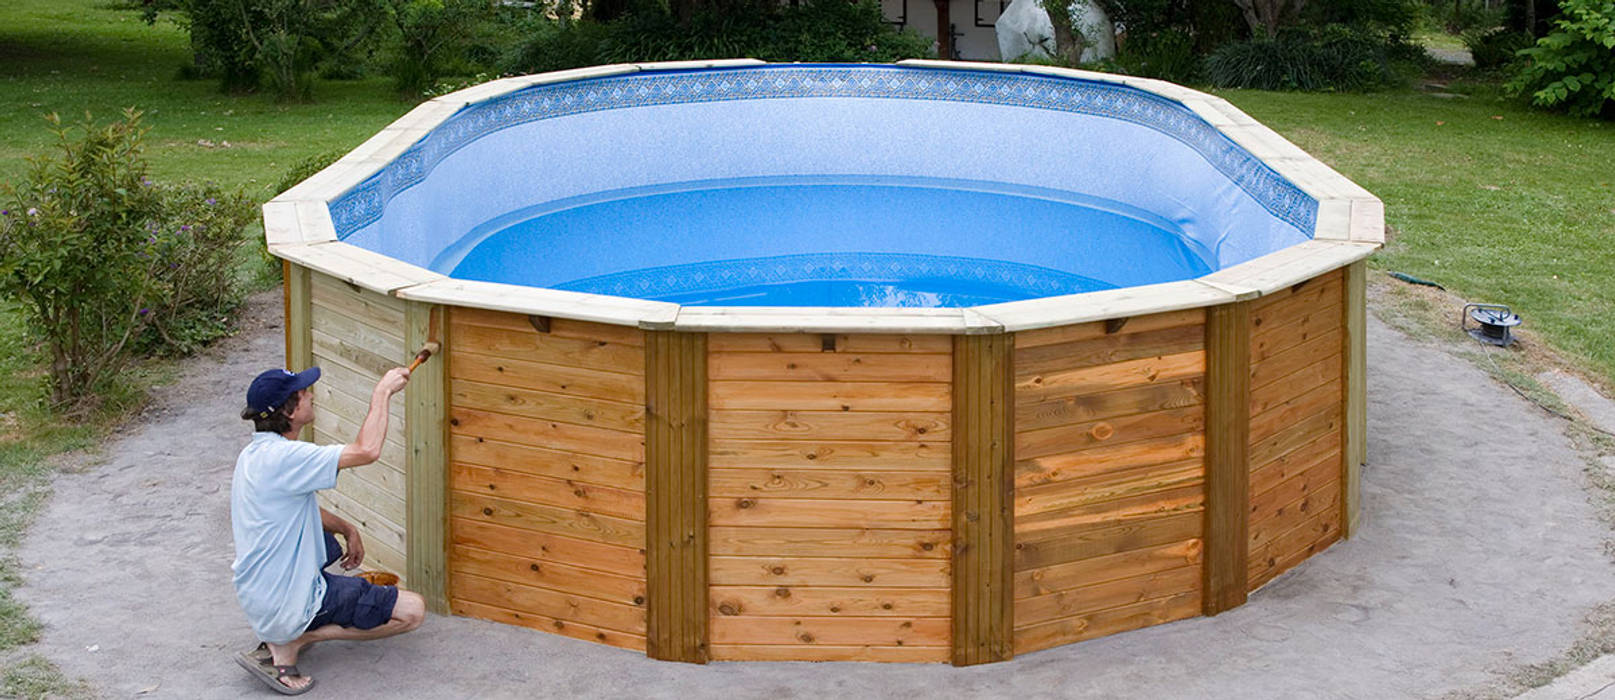 Barnizando una piscina de Madera Outlet Piscinas Piscinas de jardín Madera Acabado en madera piscinas madera,piscina desmontable